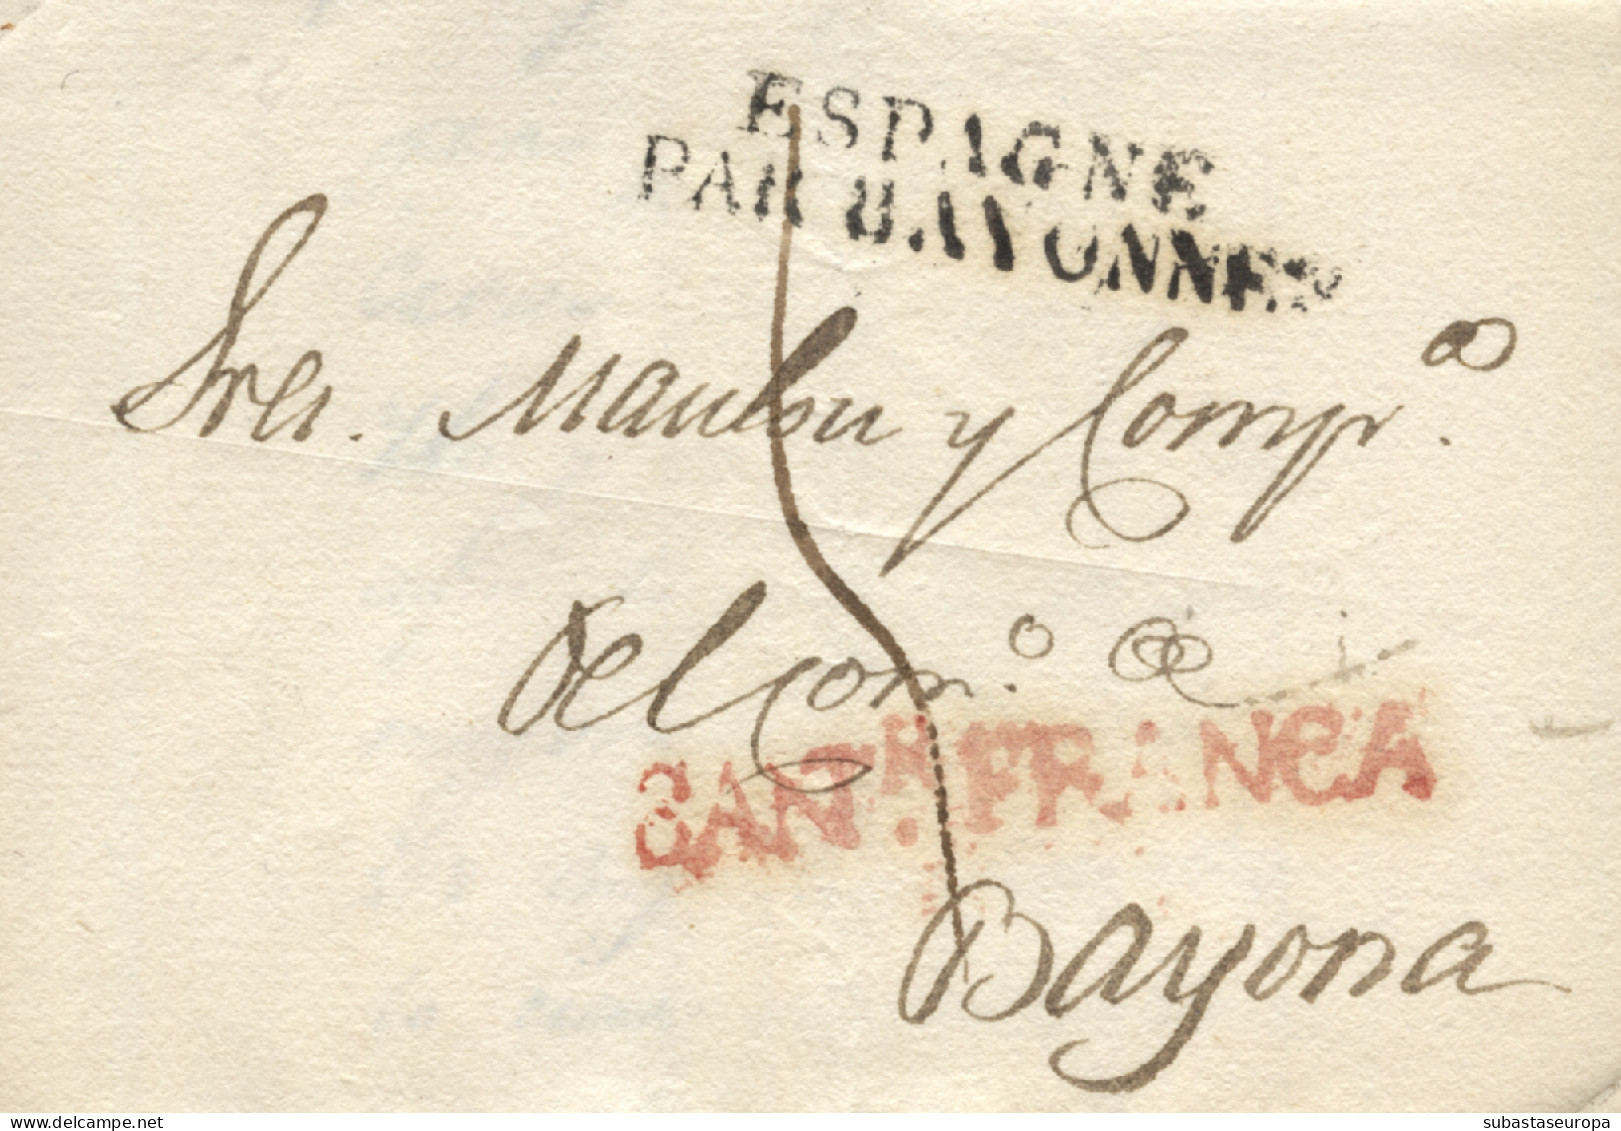 D.P. 9. 1824. Carta De Santander A Bayona (Francia). Marca Lineal 15R Y En Negro Marca Francesa "ESPAGNE/PAR BAYONNE".  - ...-1850 Vorphilatelie